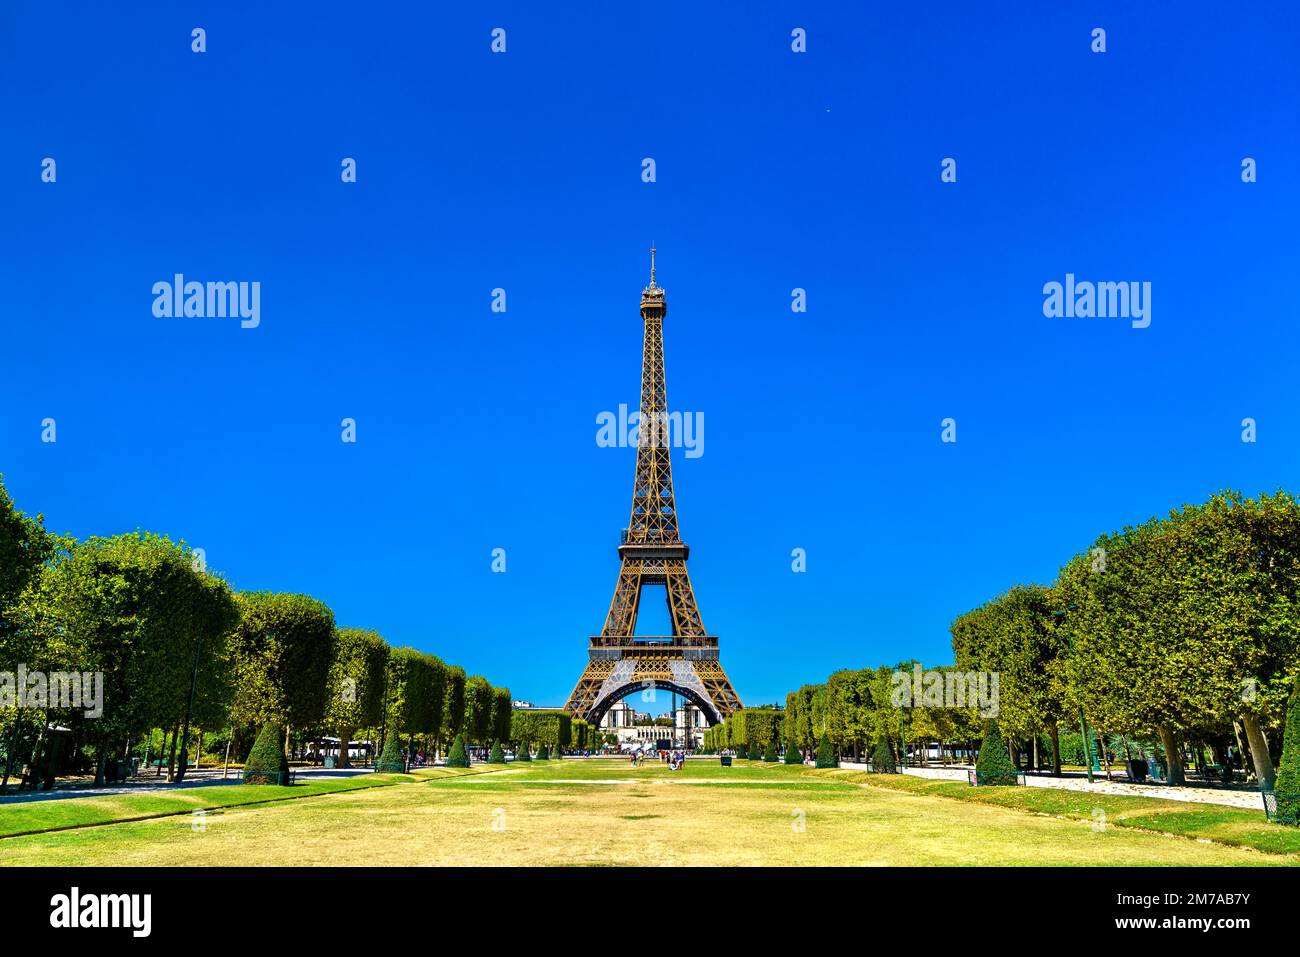 La Tour Eiffel sur le champ de Mars à Paris. Attraction touristique majeure en France Banque D'Images